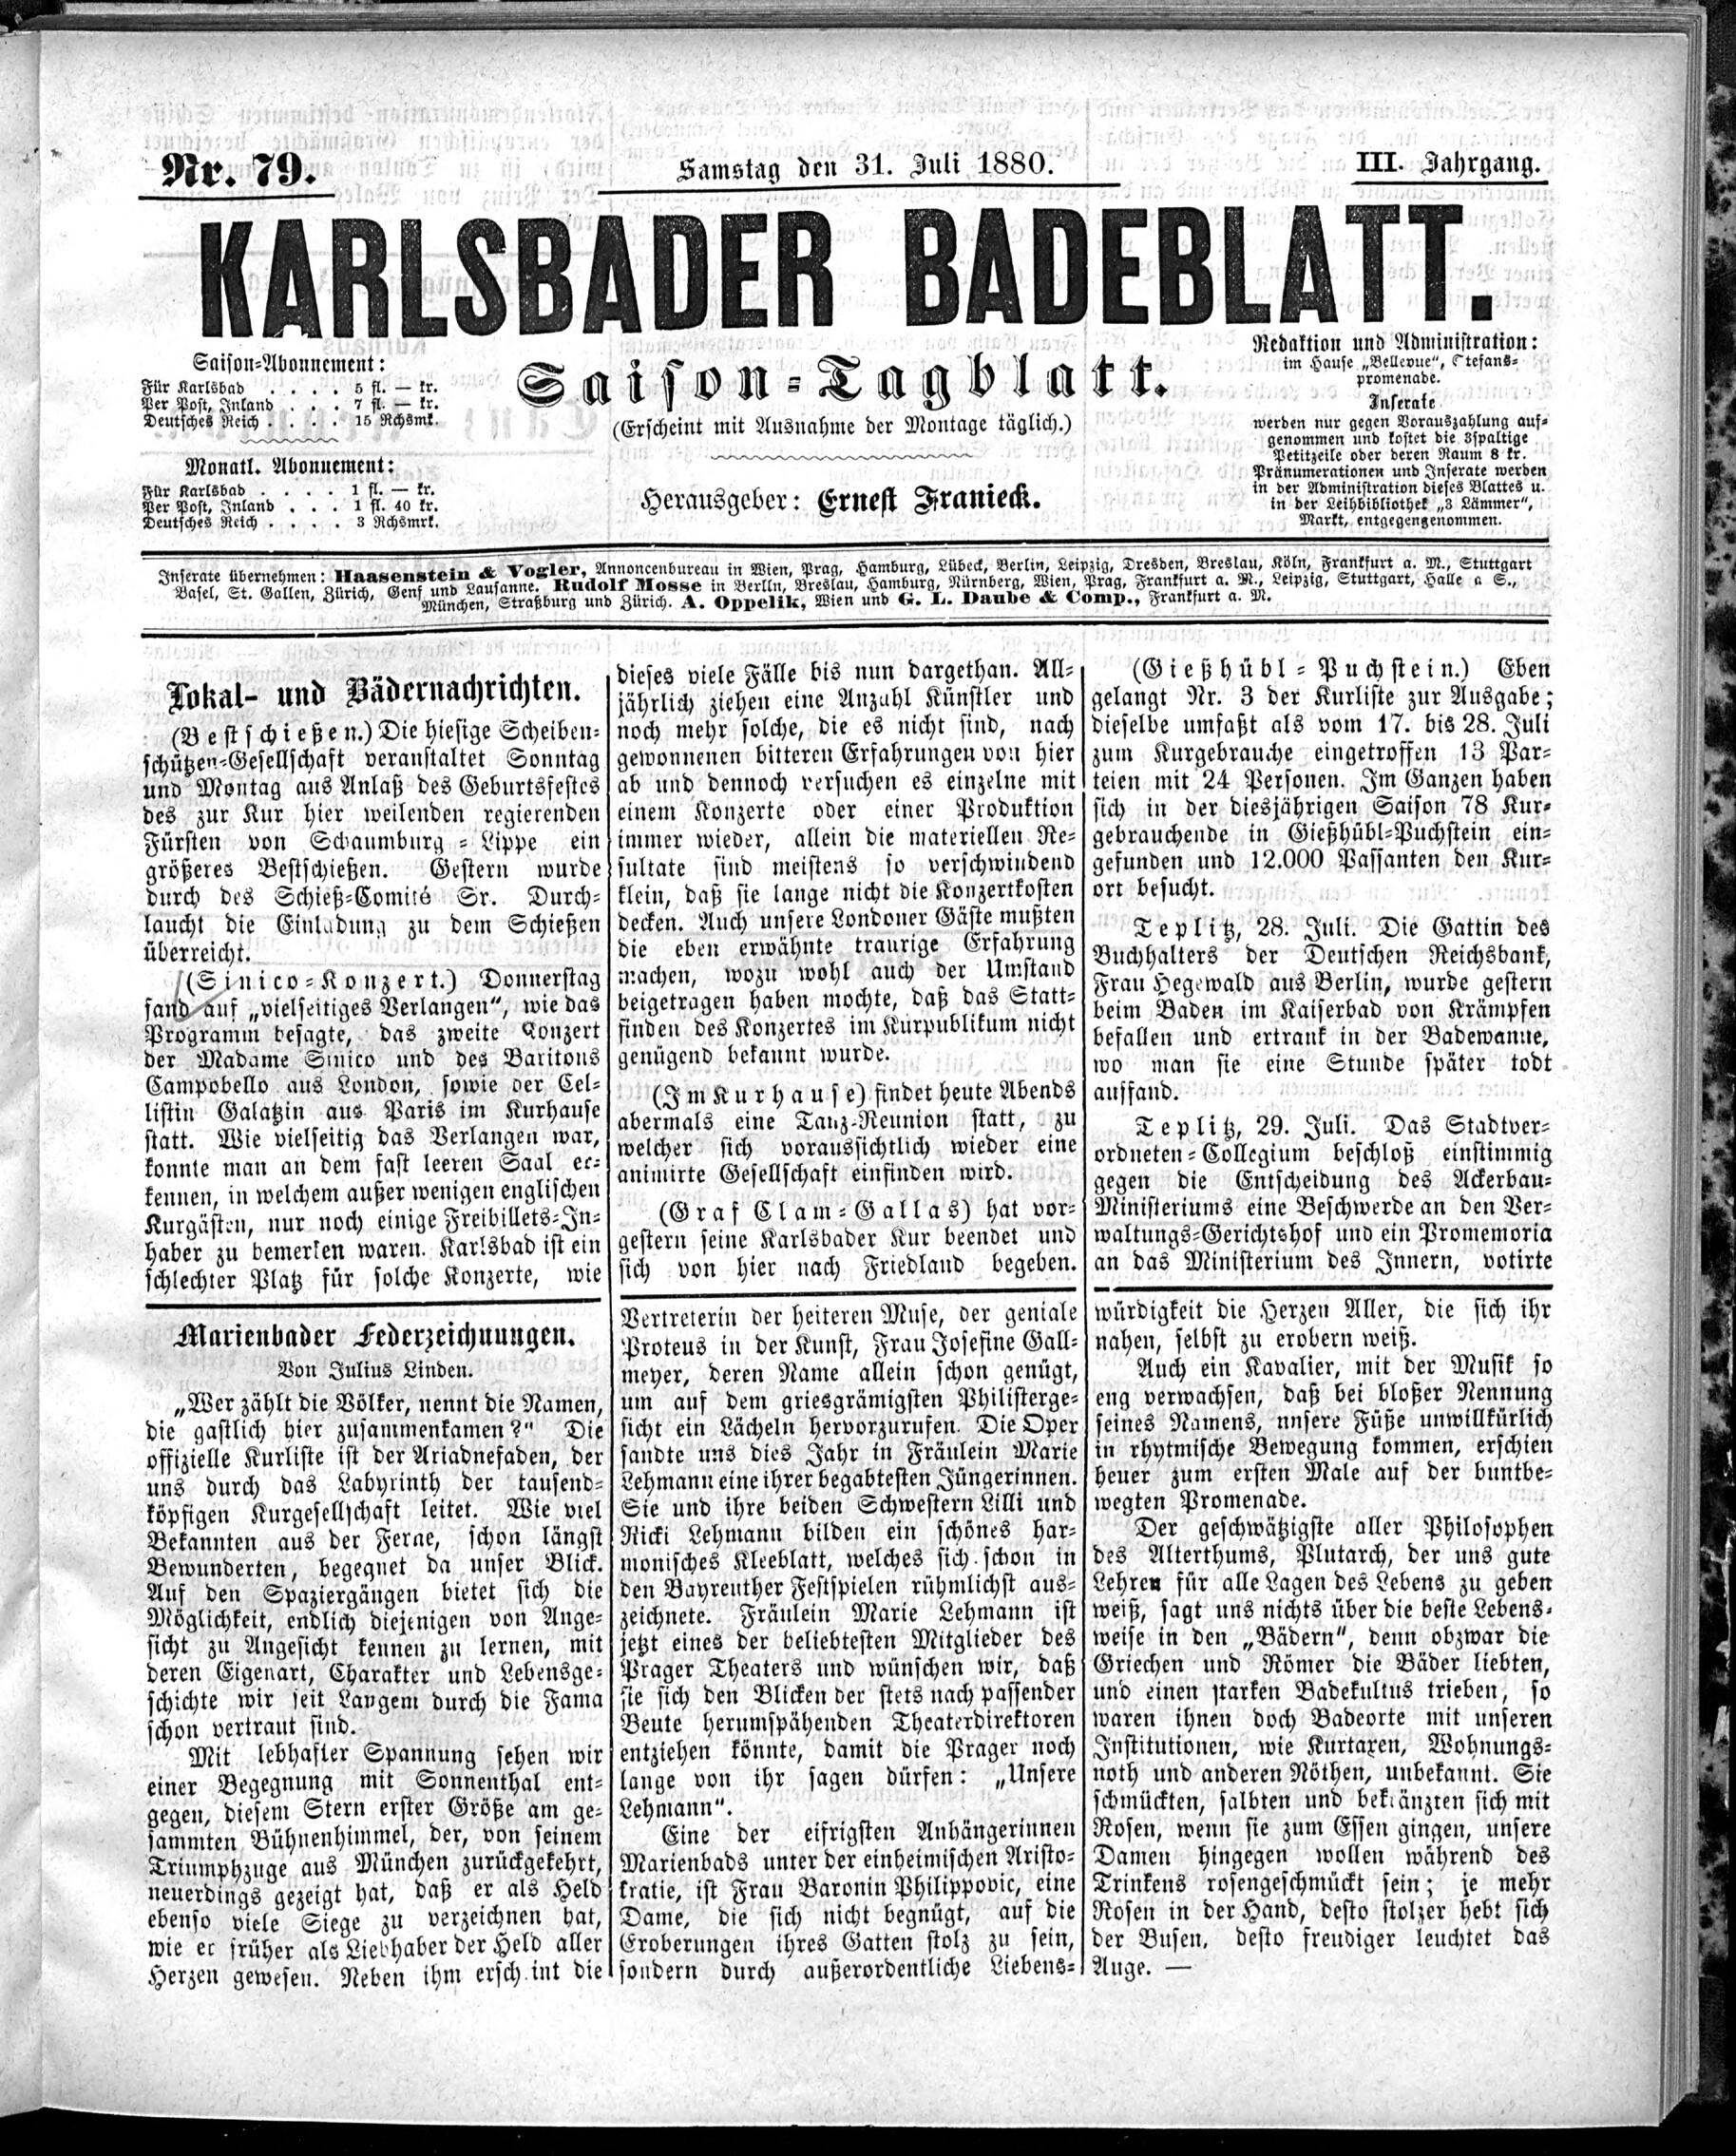 1. karlsbader-badeblatt-1880-07-31-n79_1605